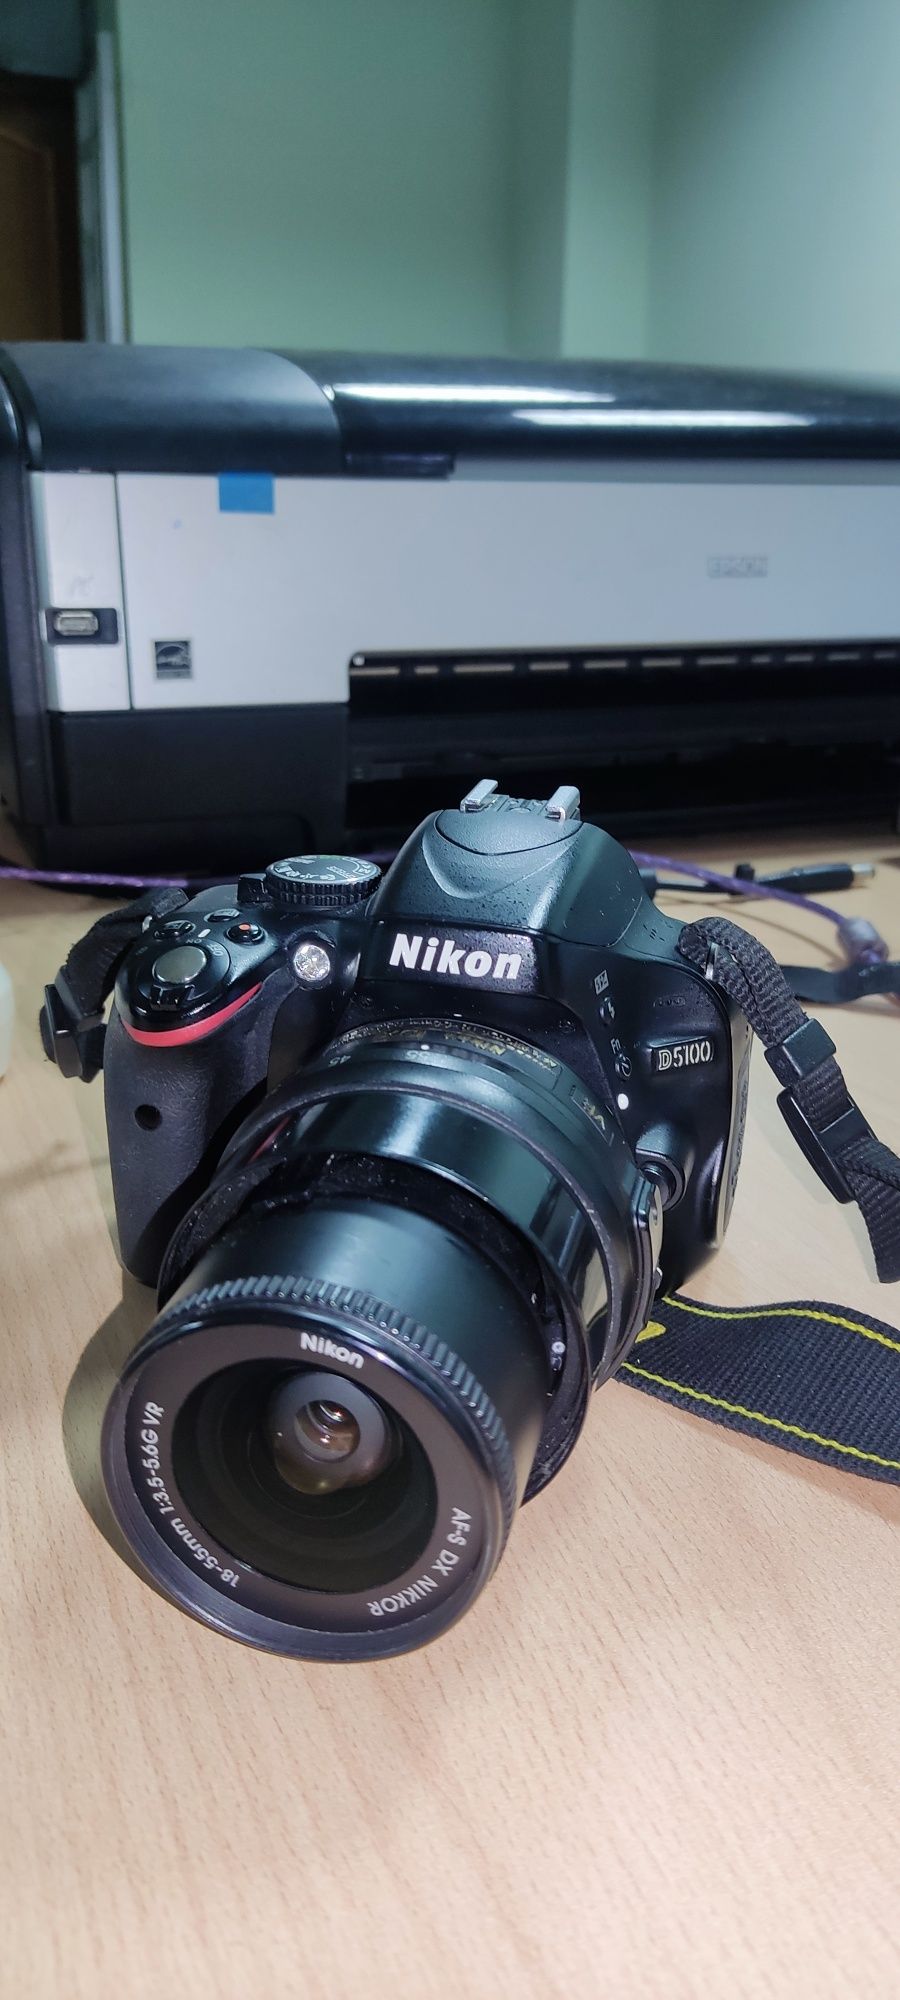 Фотоаппарат Nikon D5100 с kit объективом Nikon 18-55mm f3,5-5,6